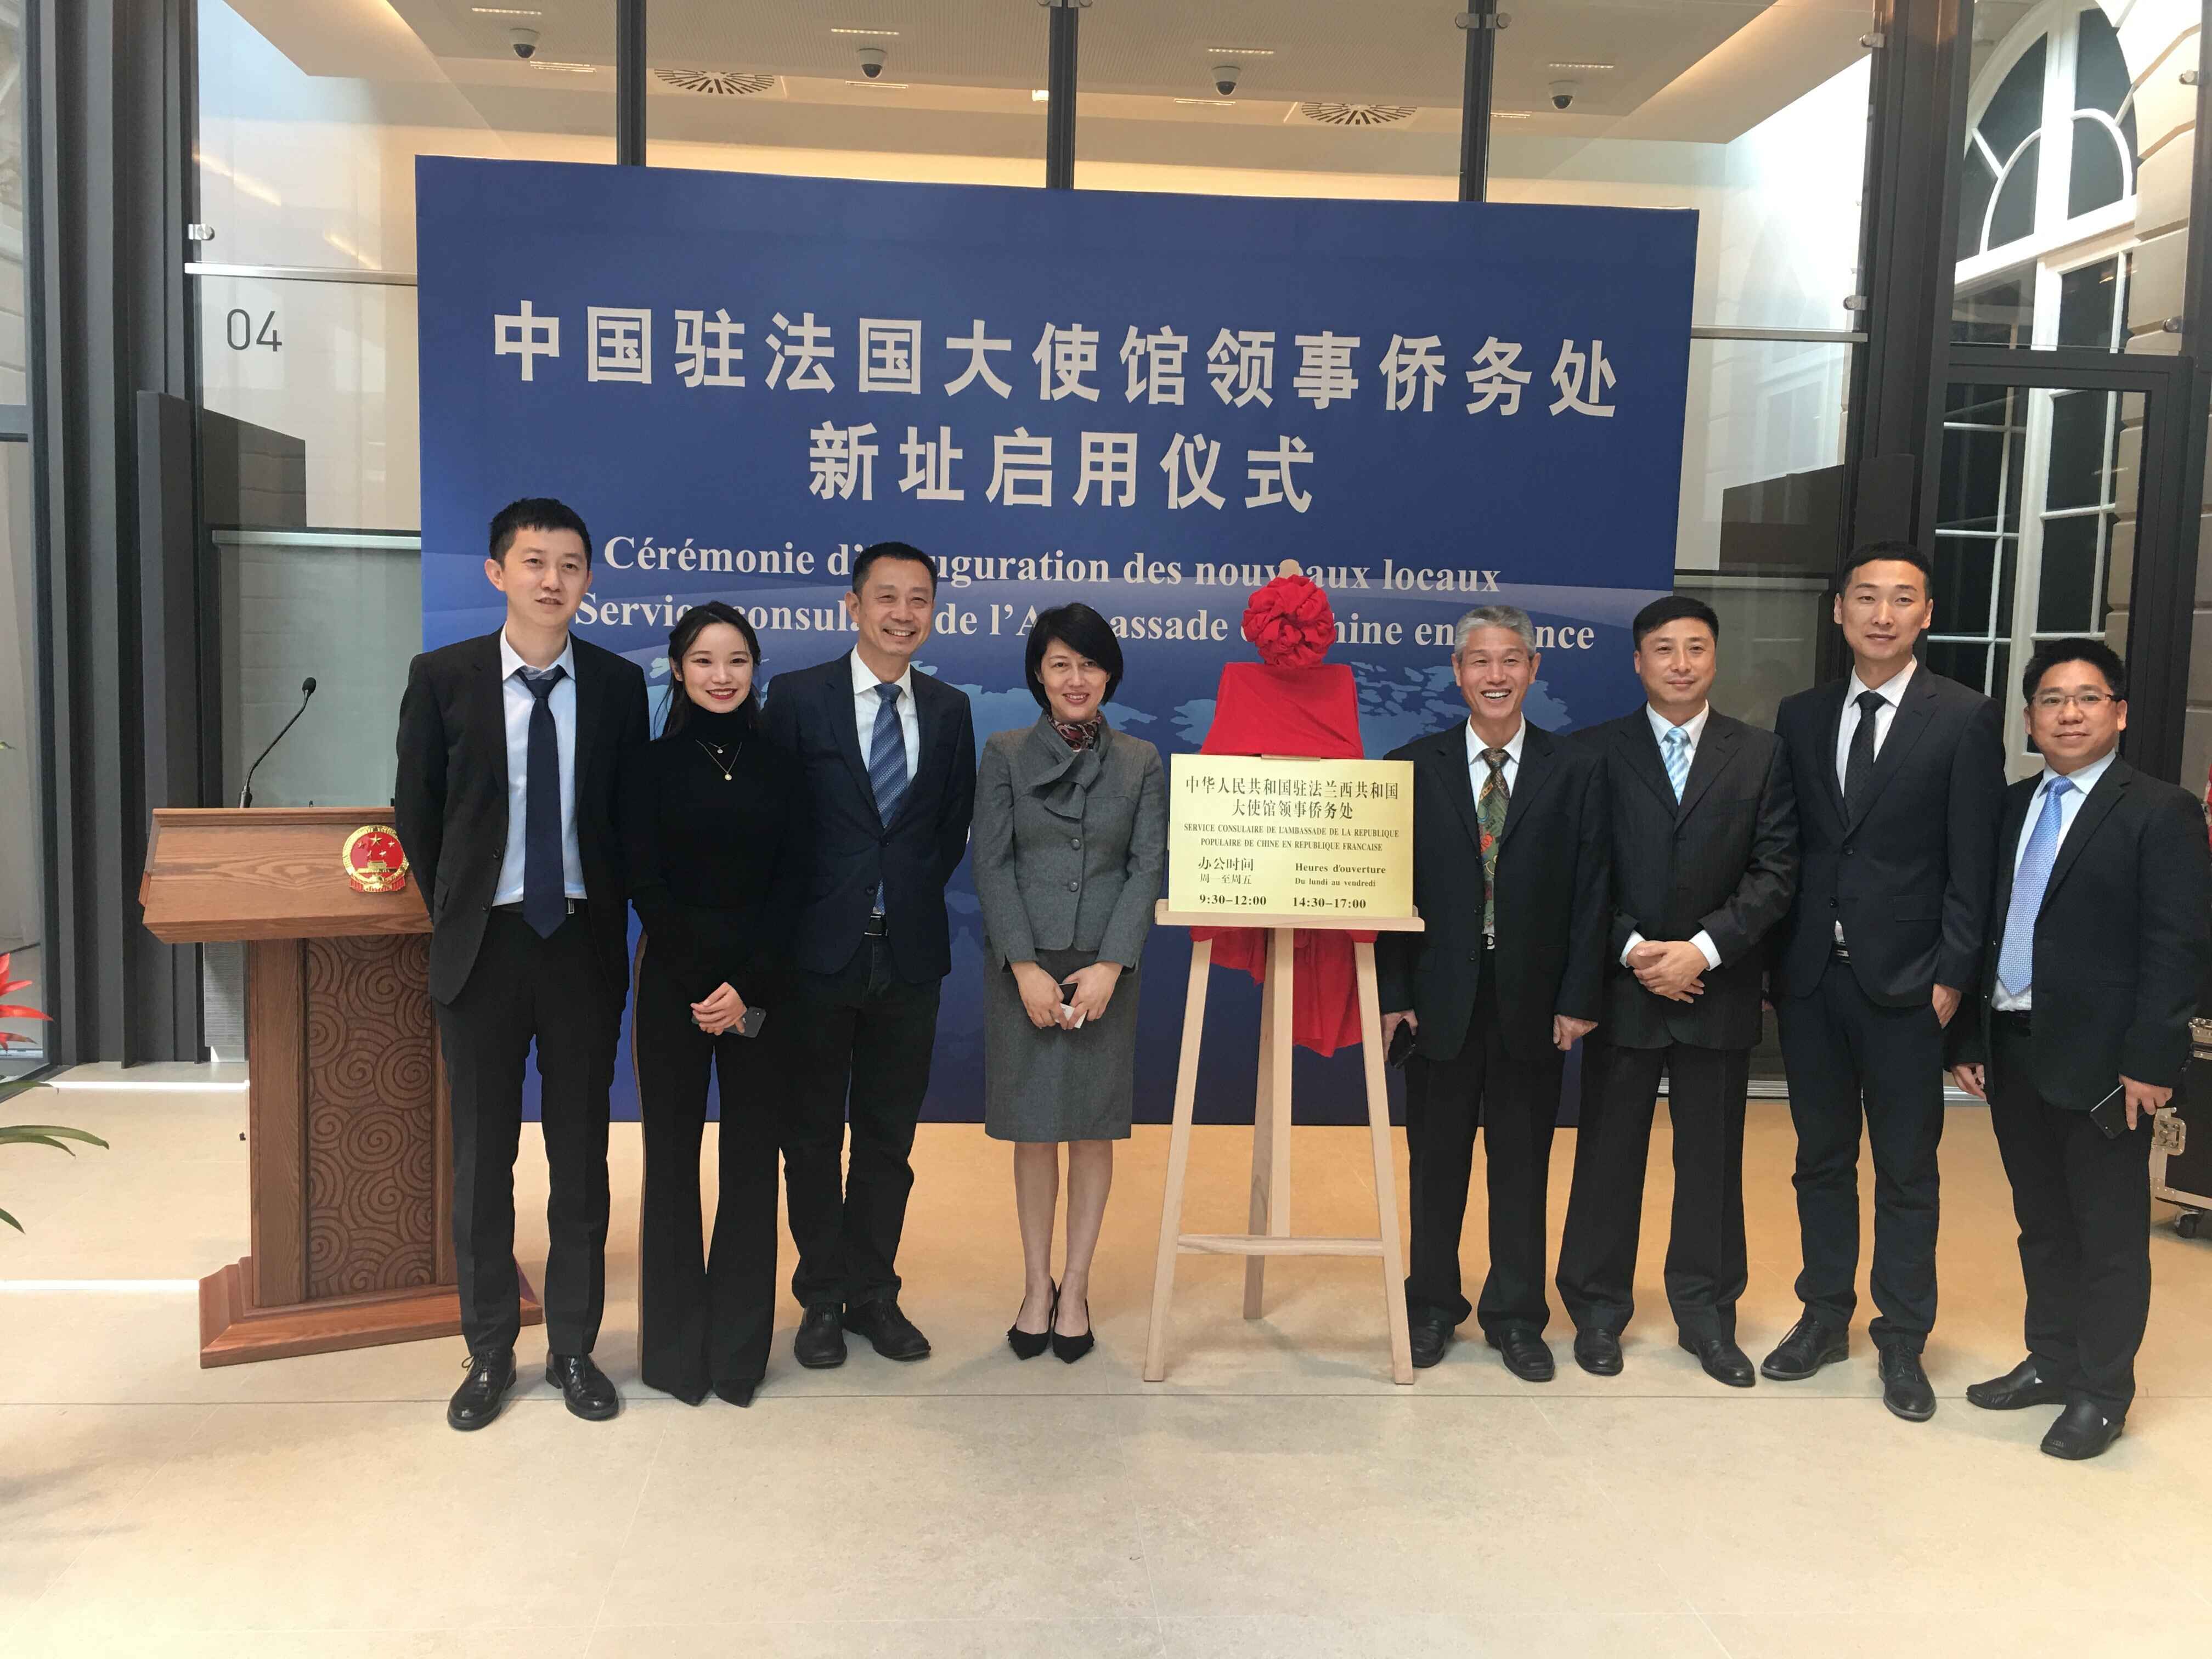 Das von CZICC Errichtete Konsularbüro der Chinesischen Botschaft in Frankreich Ist Offiziell Eröffnet geworden